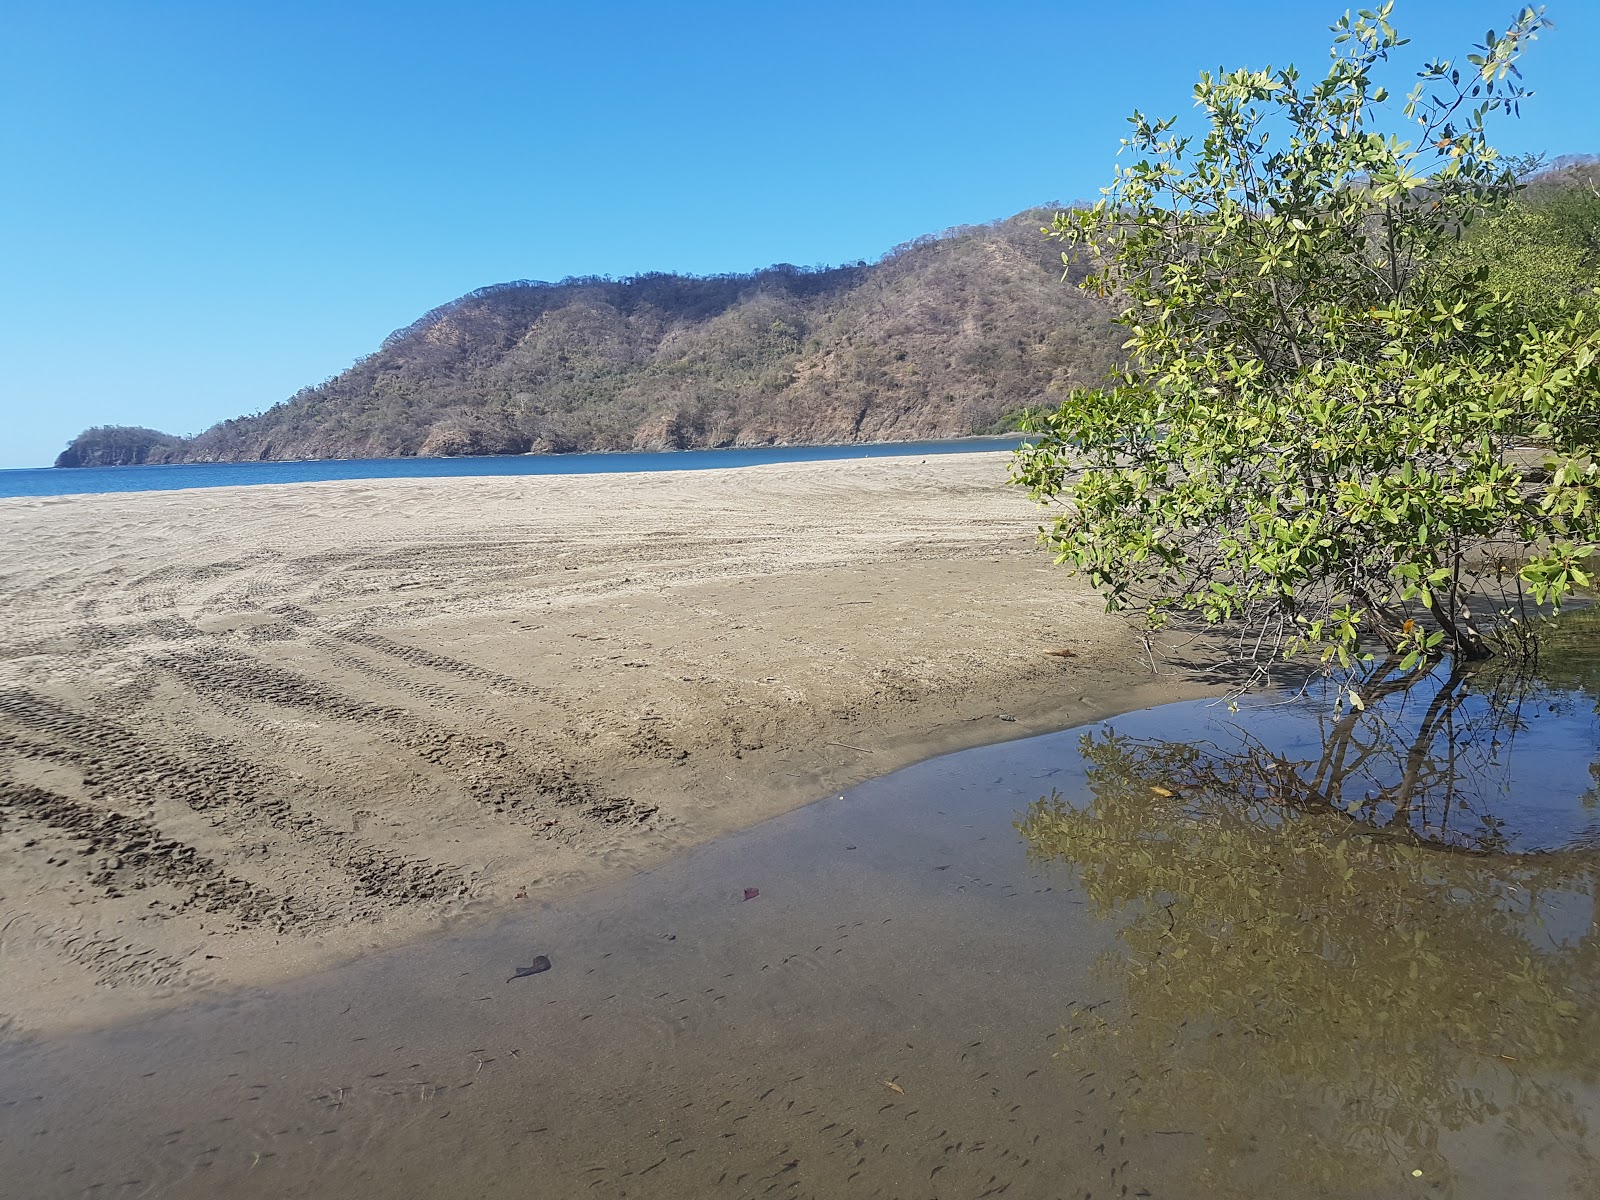 Fotografie cu Playa Grande - locul popular printre cunoscătorii de relaxare